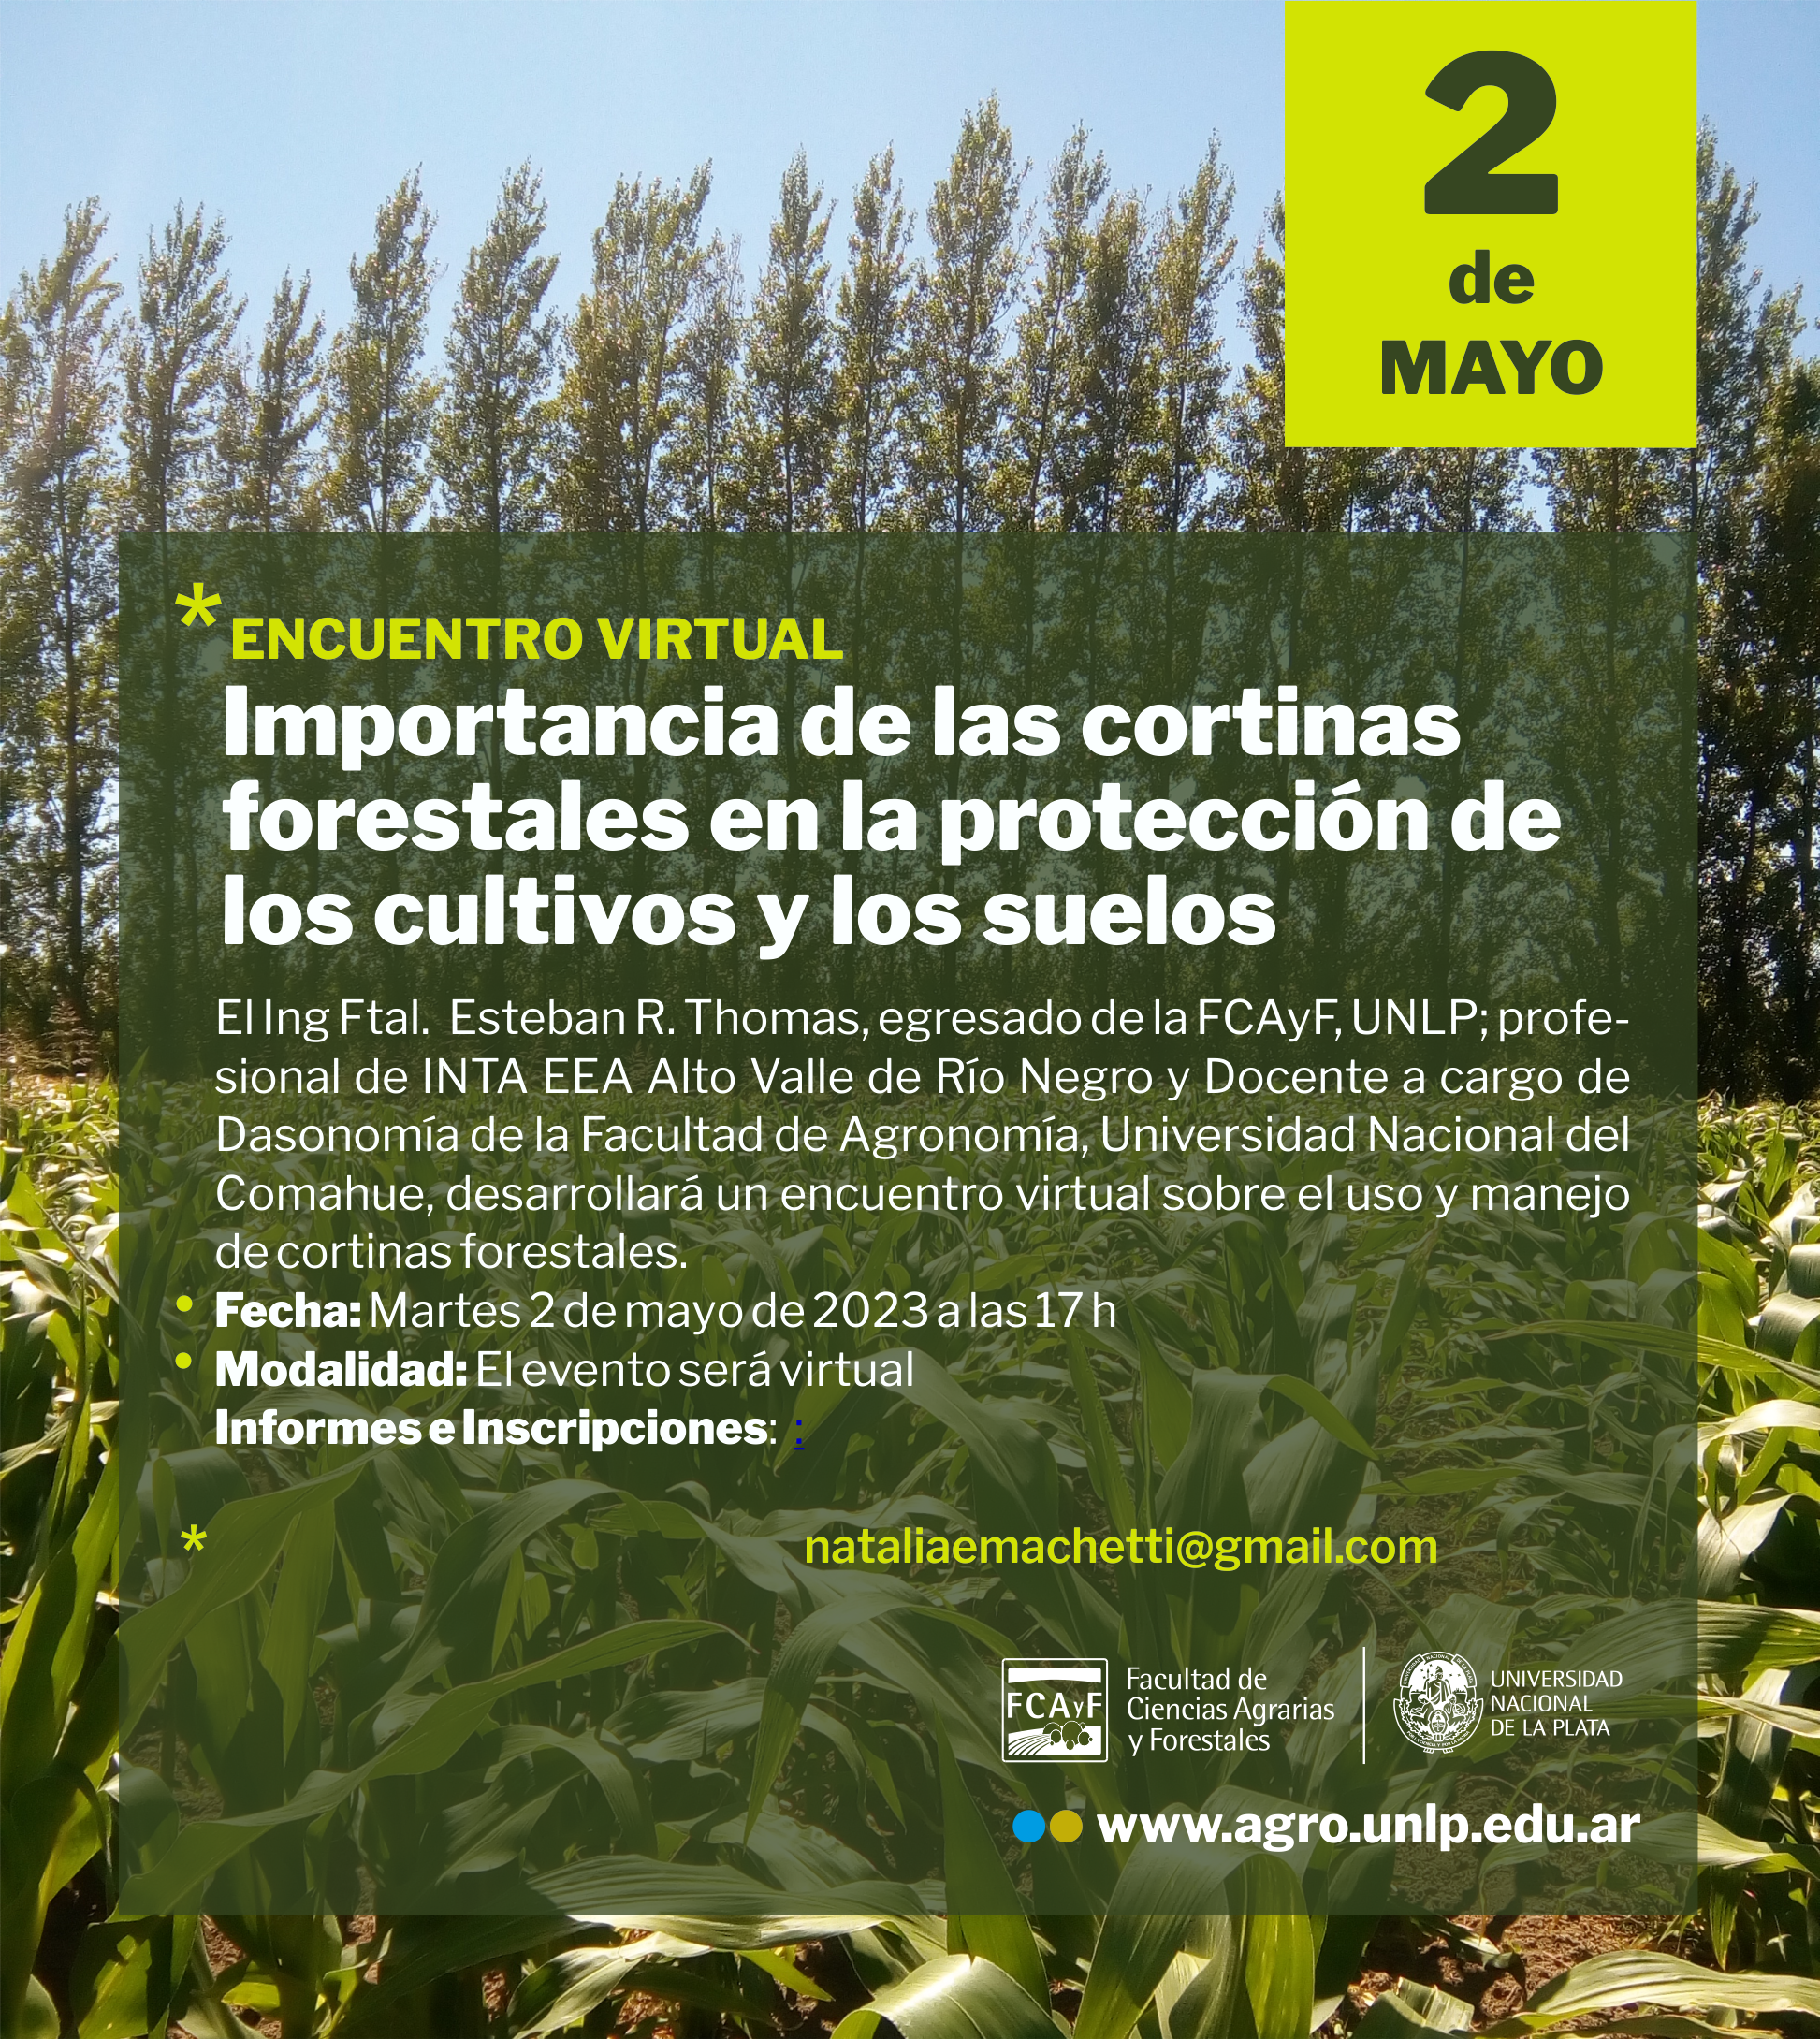 Encuentro virtual “Importancia de las cortinas forestales en la protección de los cultivos y los suelos”